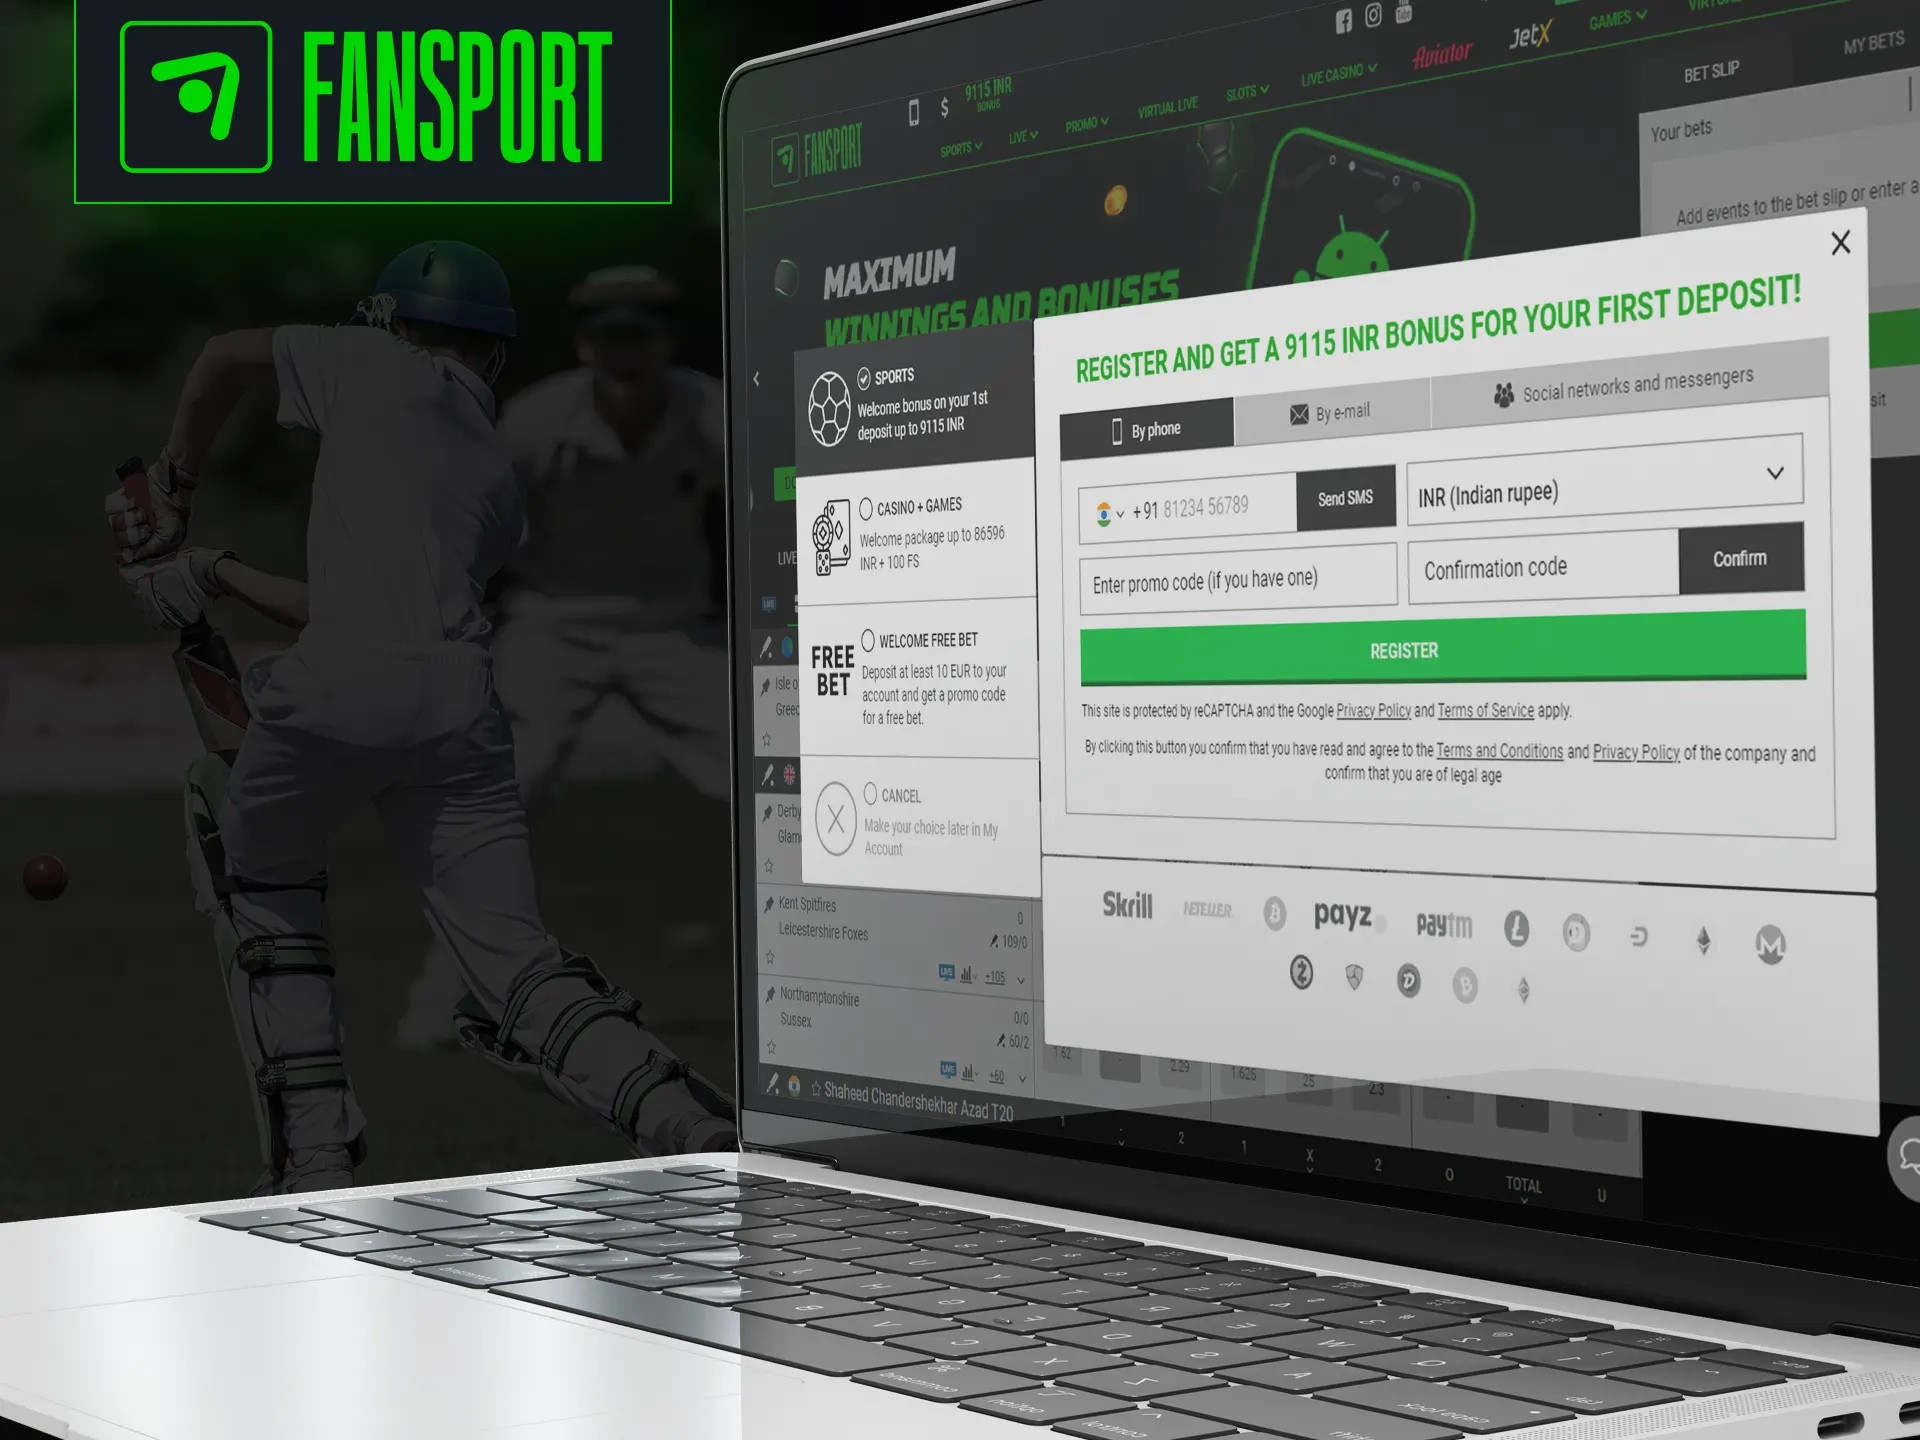 Sign up on the Fansport website.